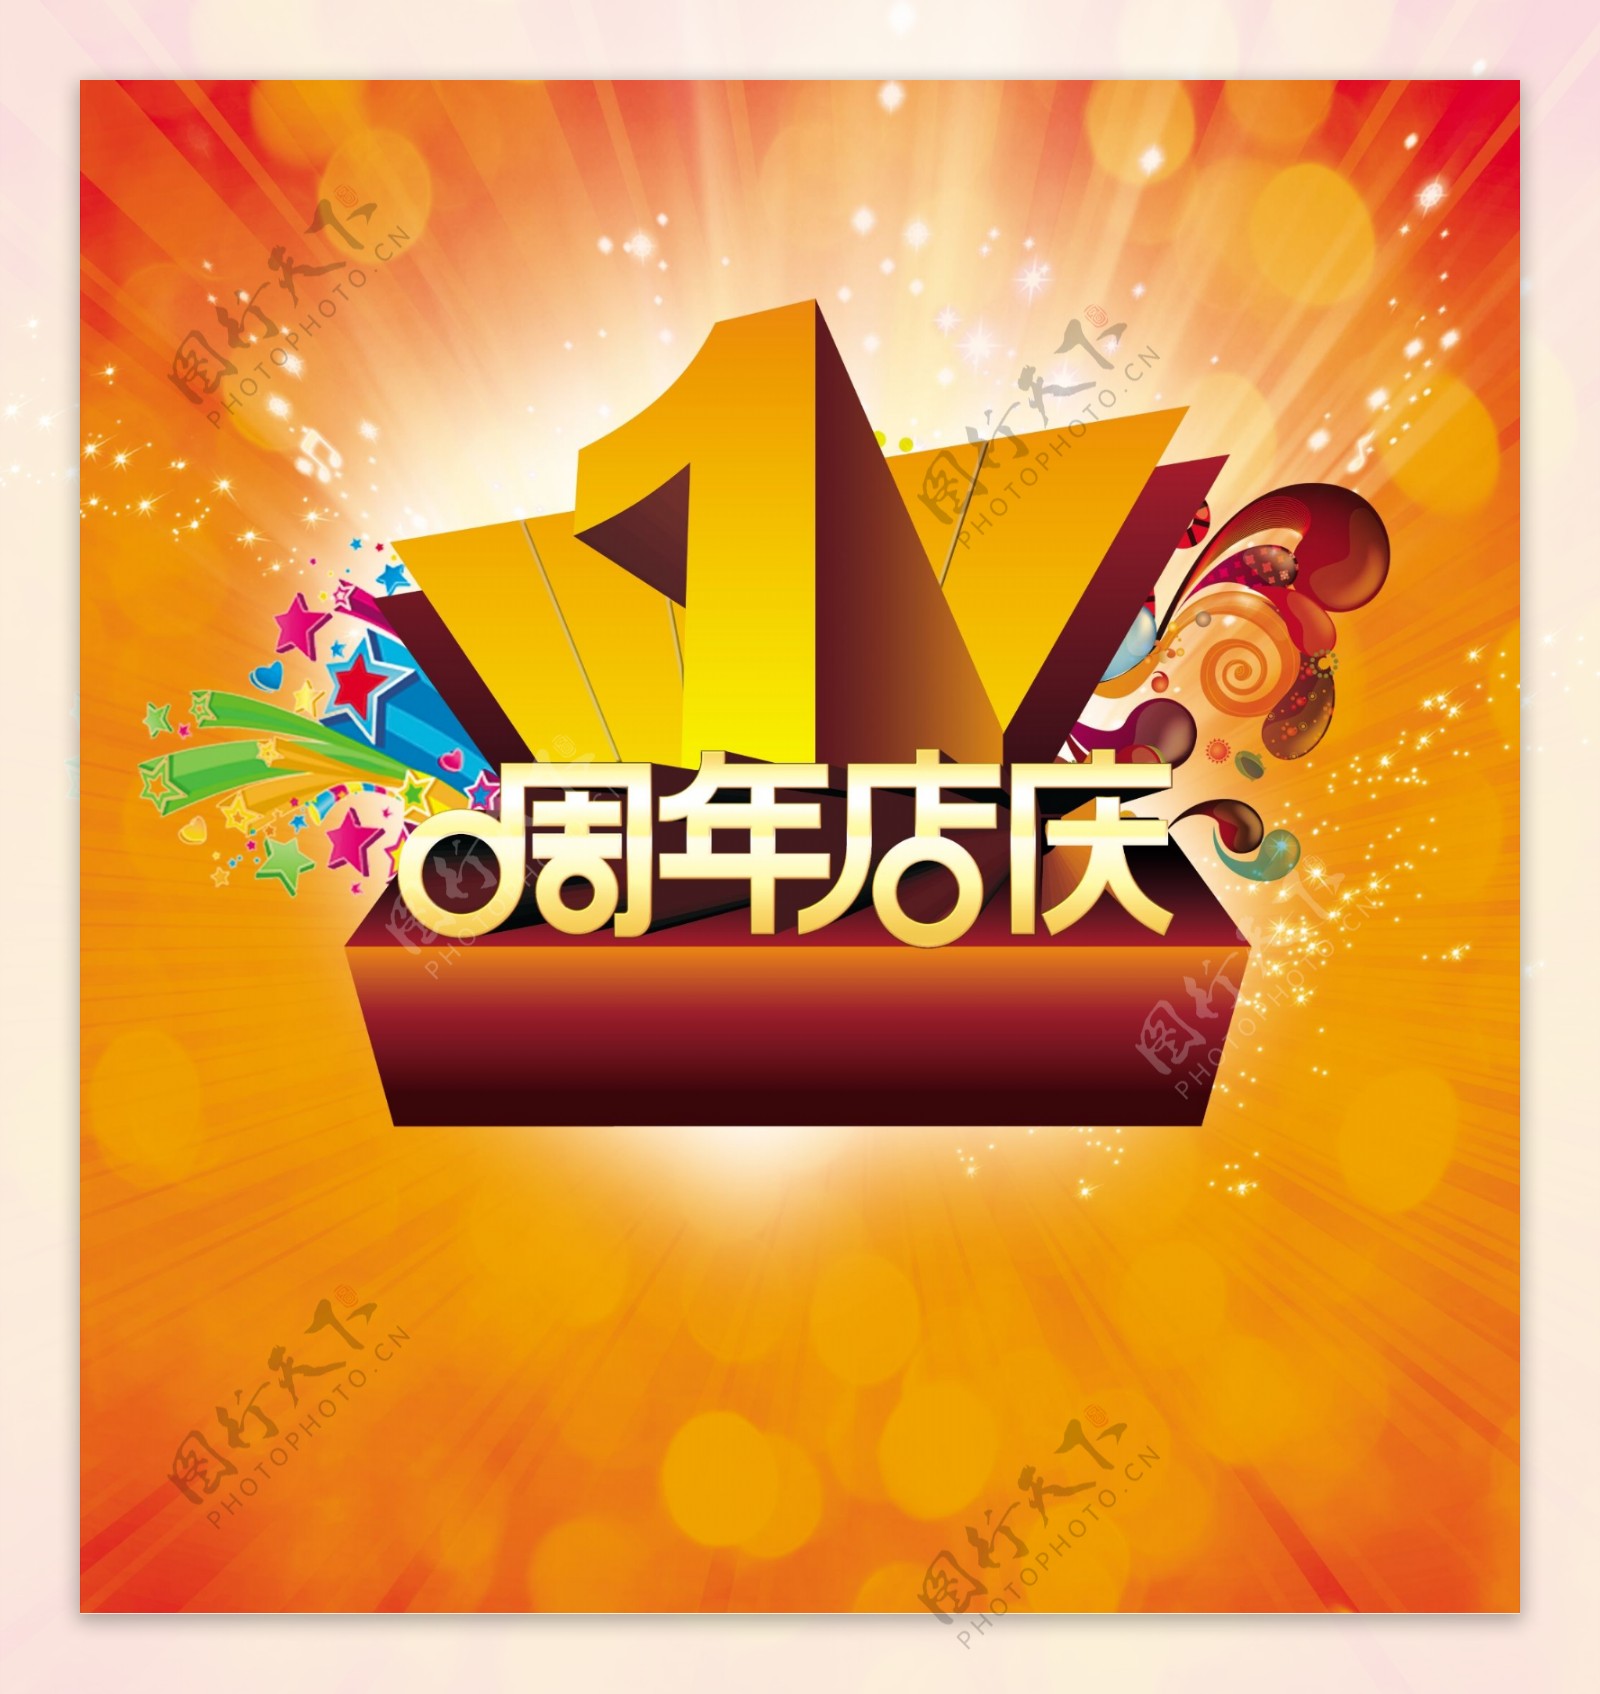 周年店庆海报图片